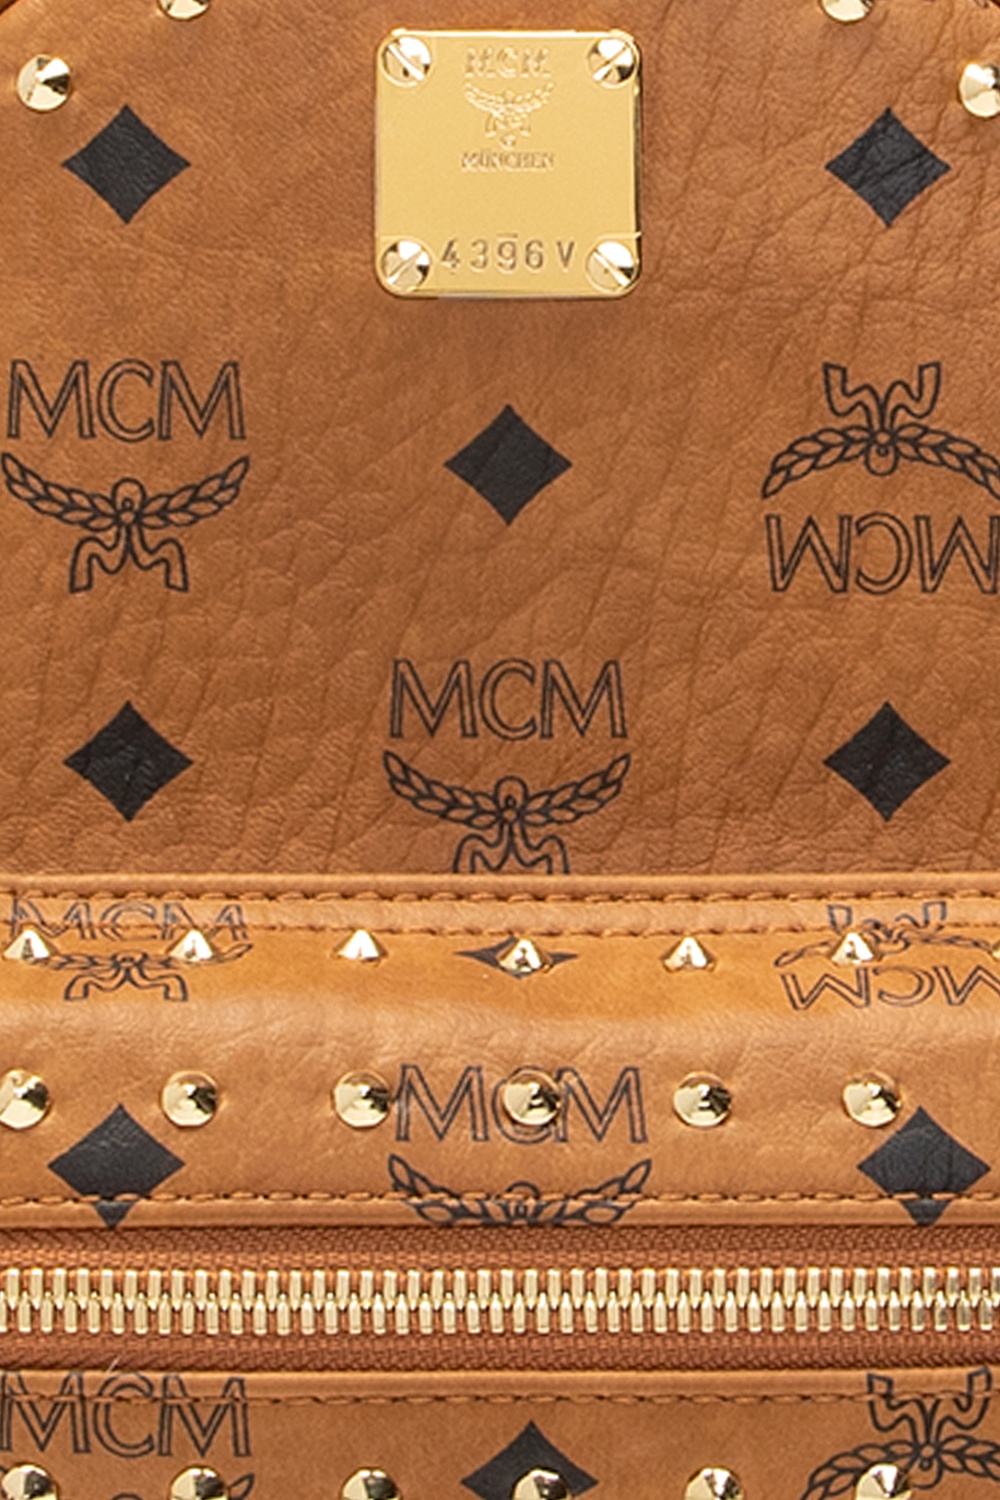 MCM Inspired Monogram Pattern – Vector Print and cut design – hi